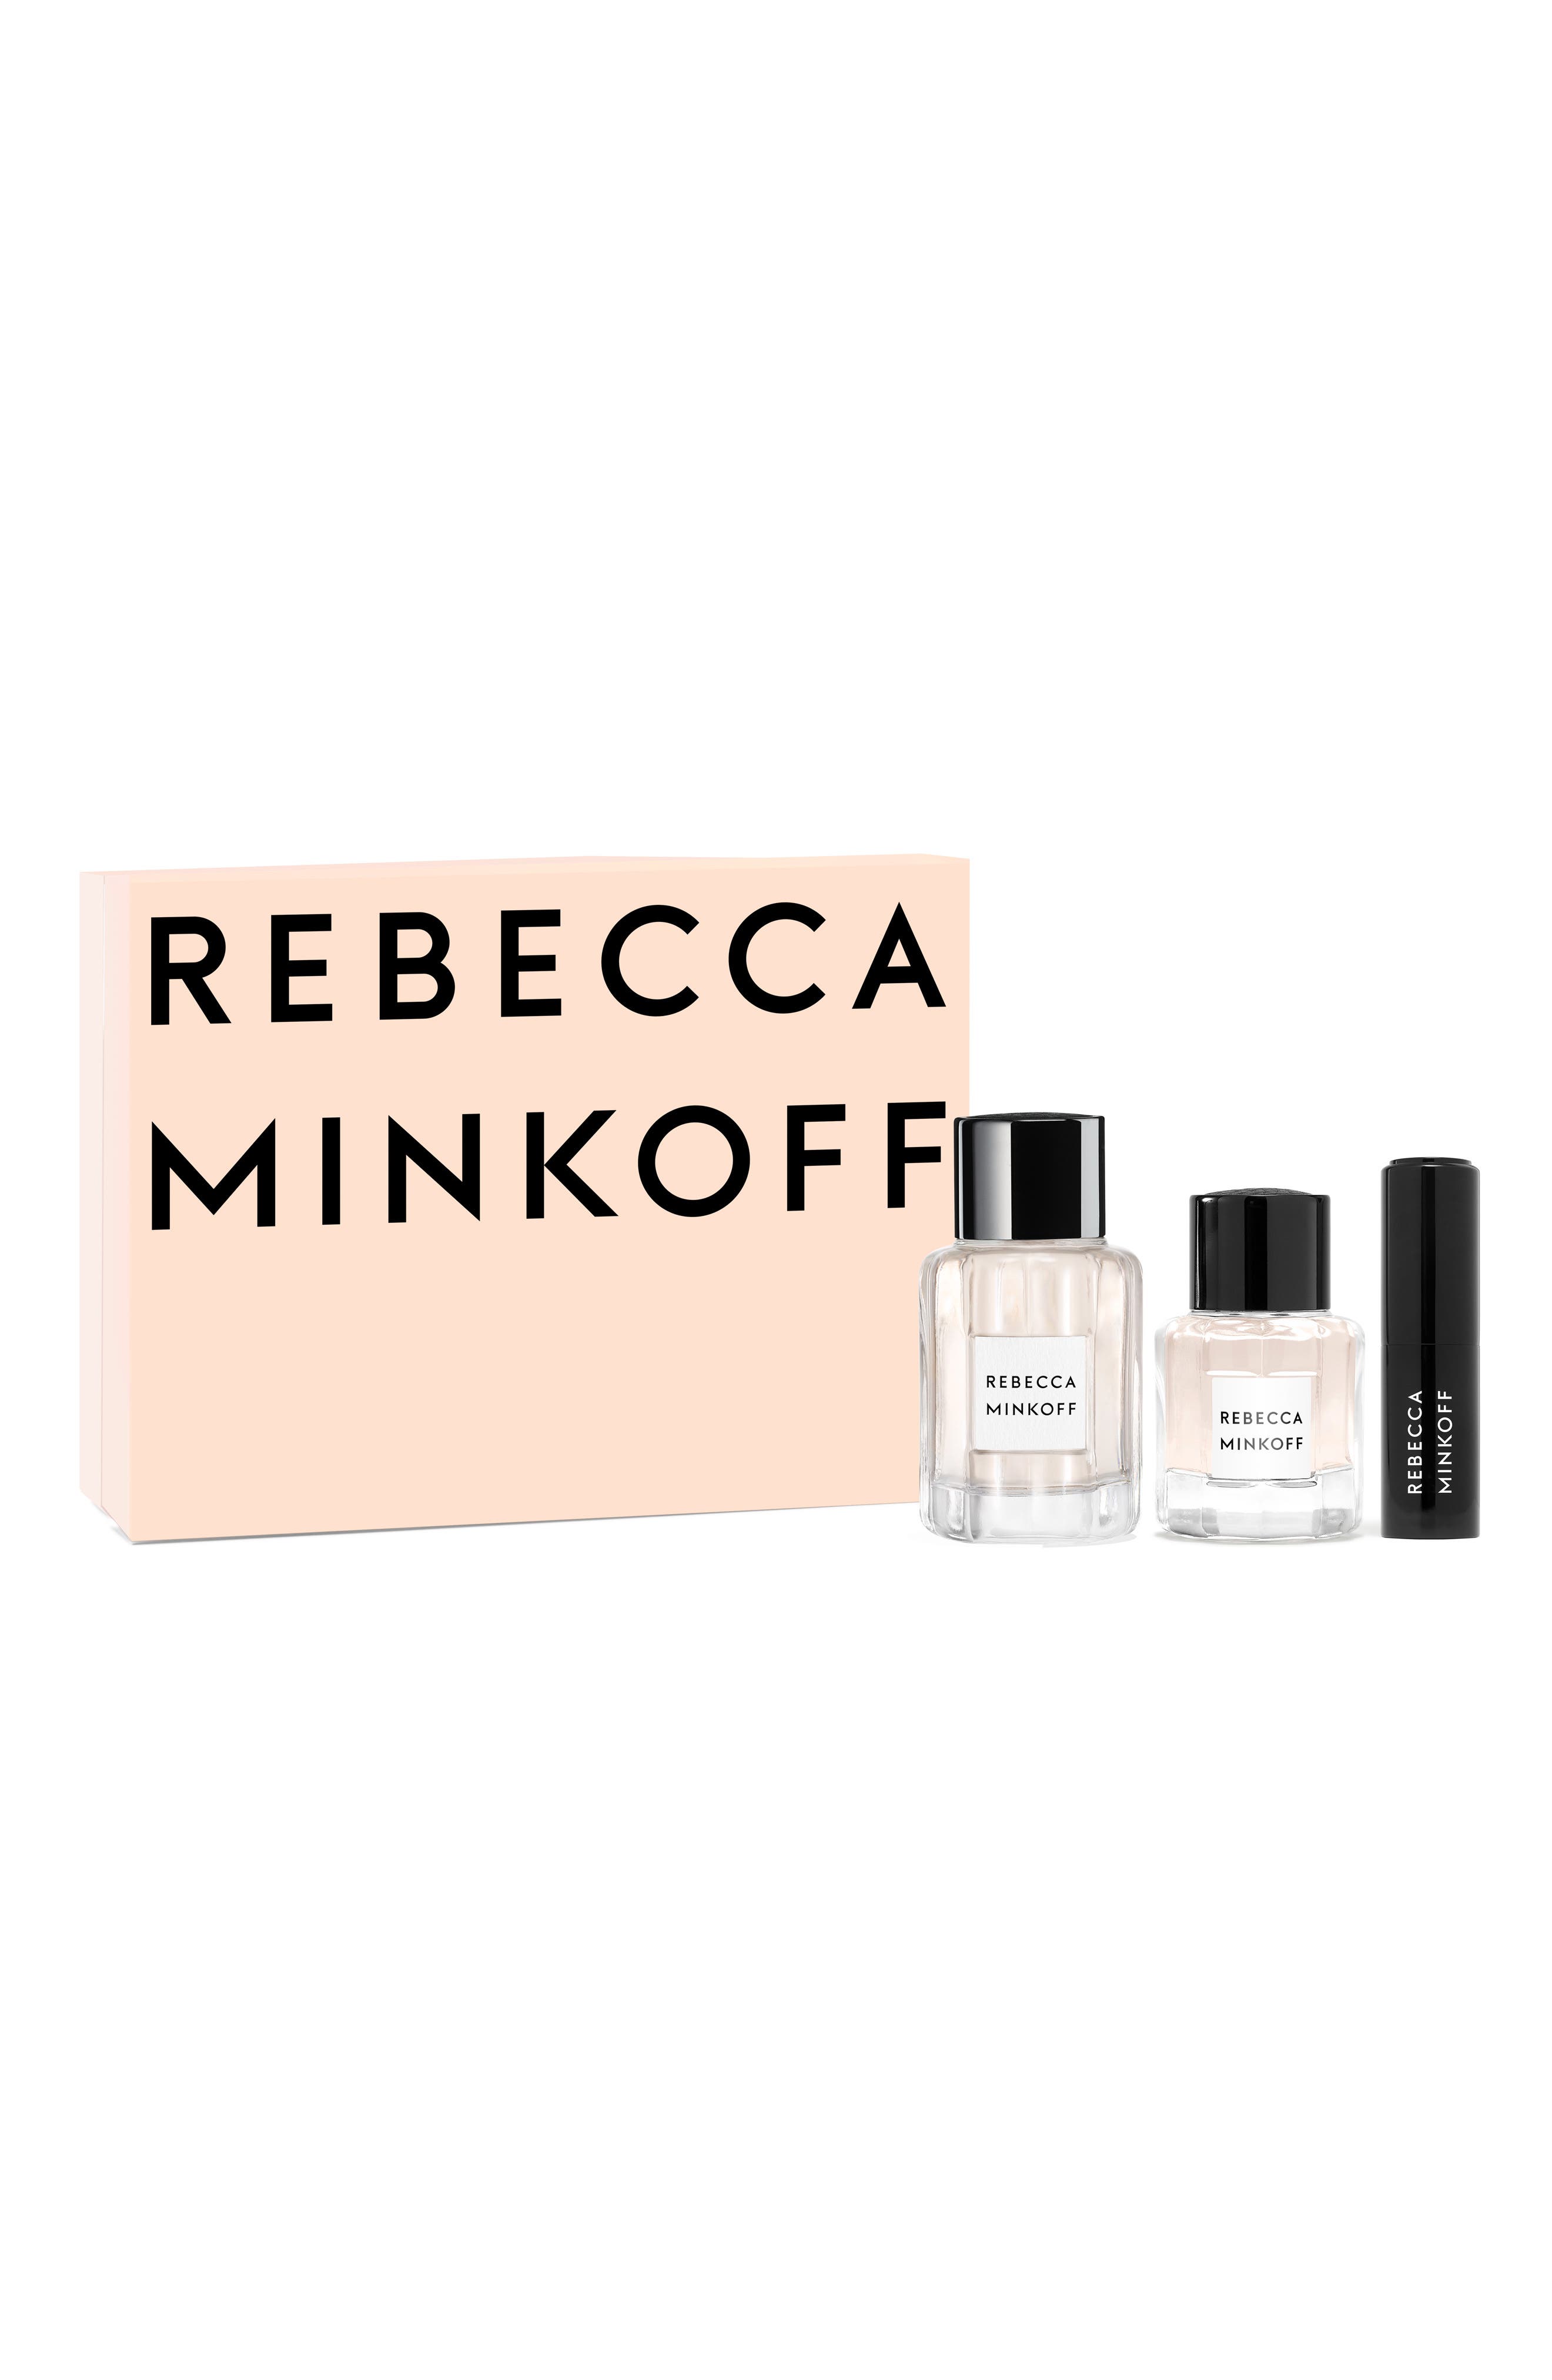 Rebecca Minkoff Eau de Parfum Set at Nordstrom